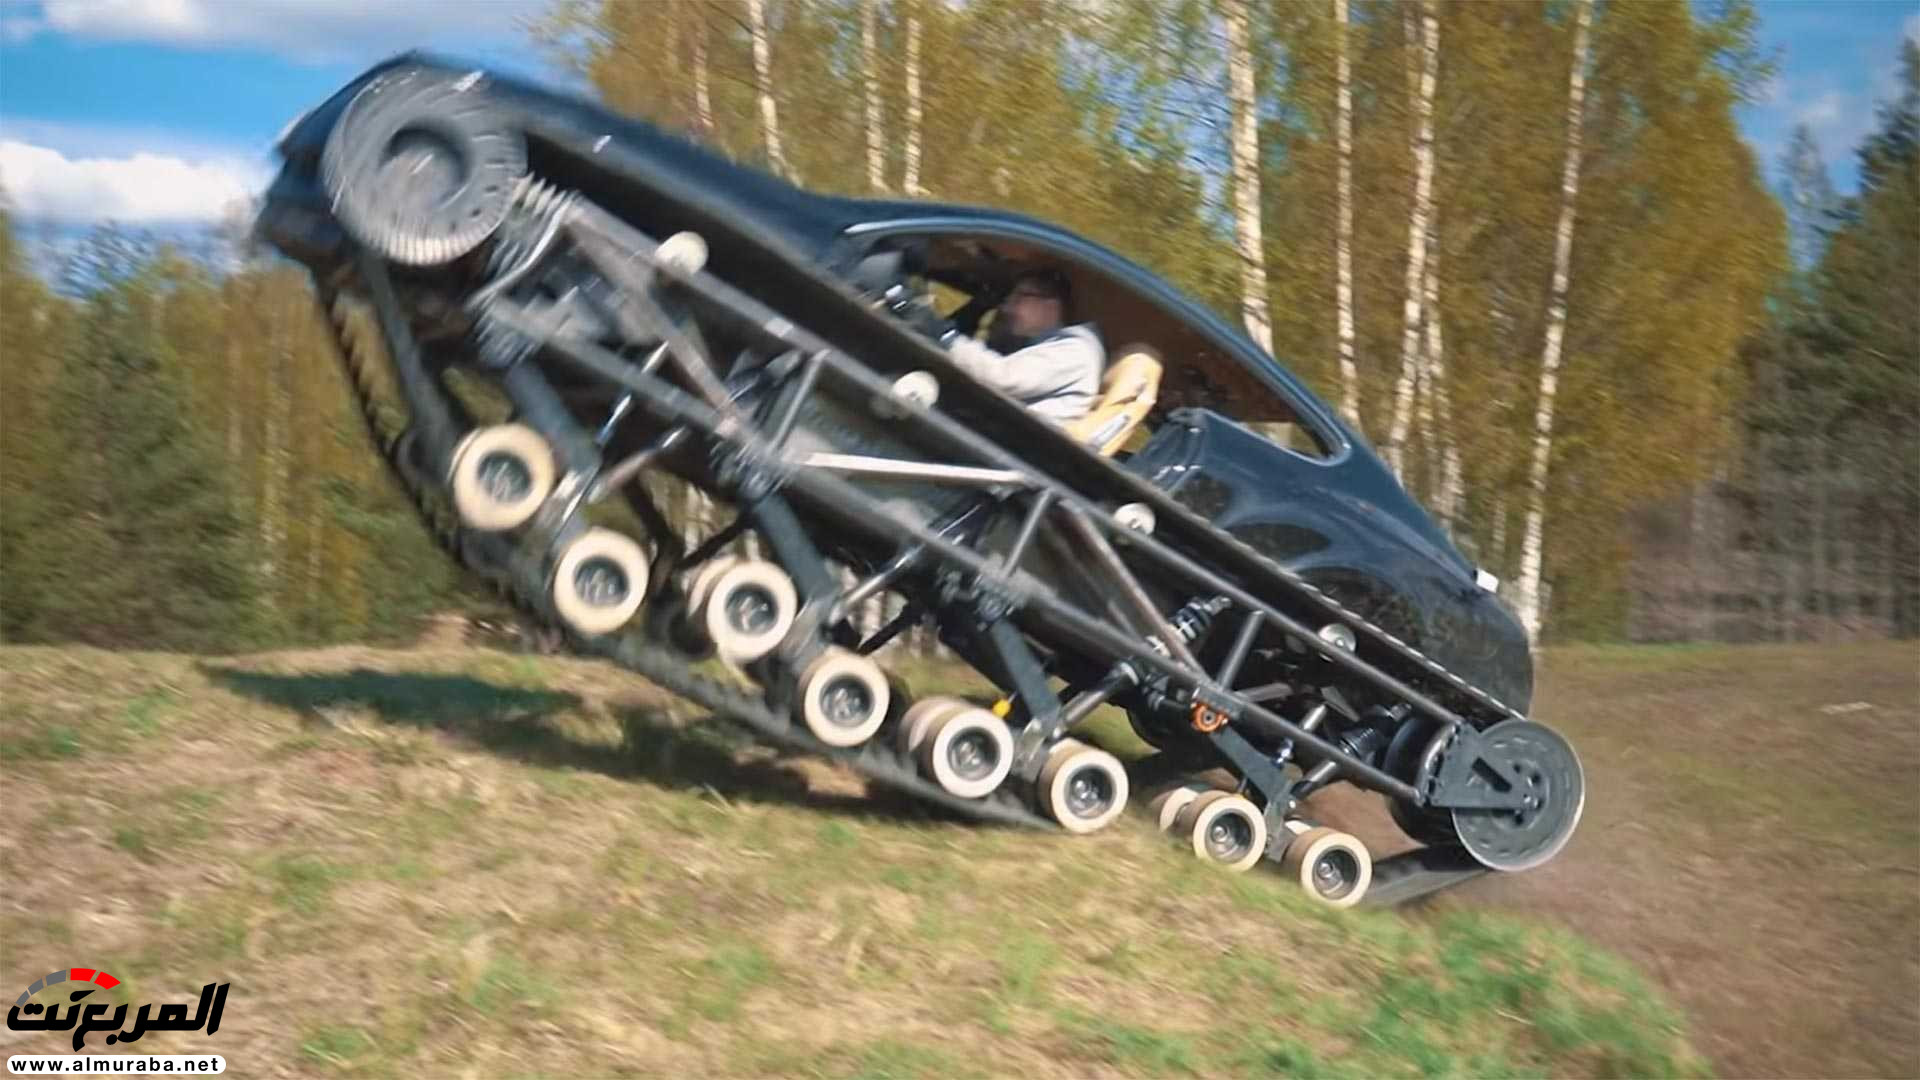 "بالفيديو" بنتلي كونتيننتال GT تتحول إلى أفخم دبابة في العالم! 4